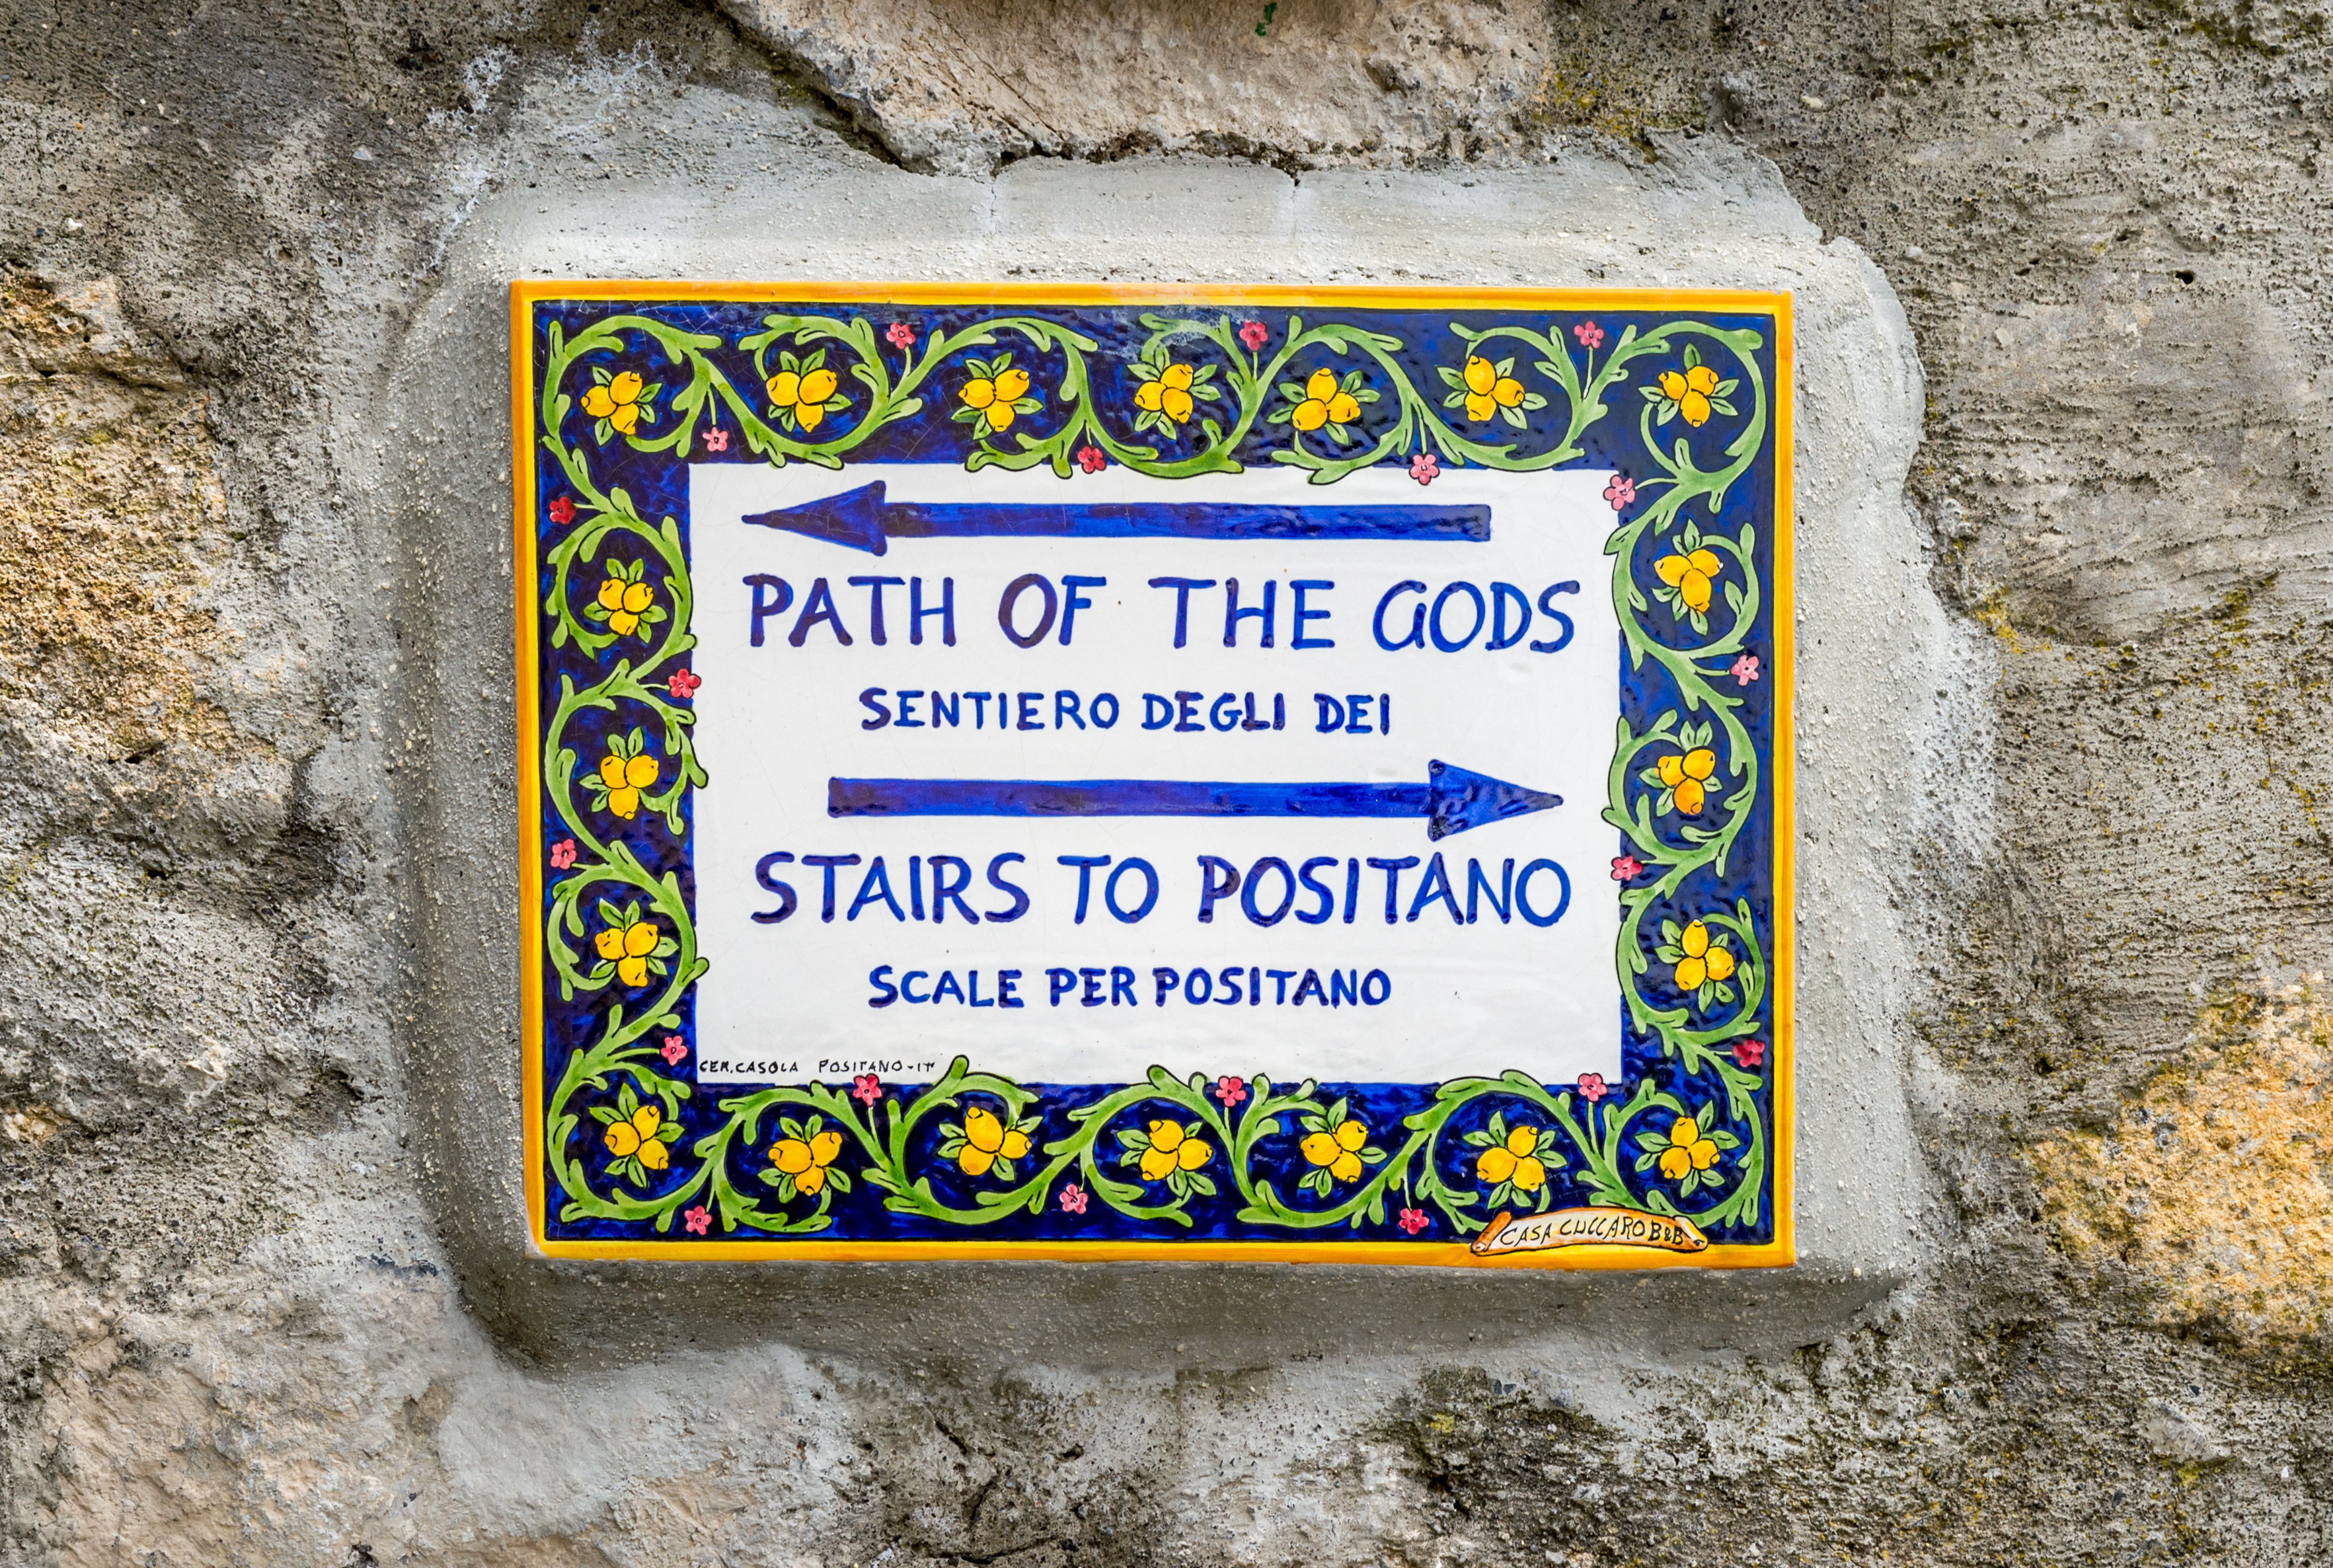 ceramic-mark-at-path-of-the-gods-and-way-to-positano-on-amalfi-coast-italy